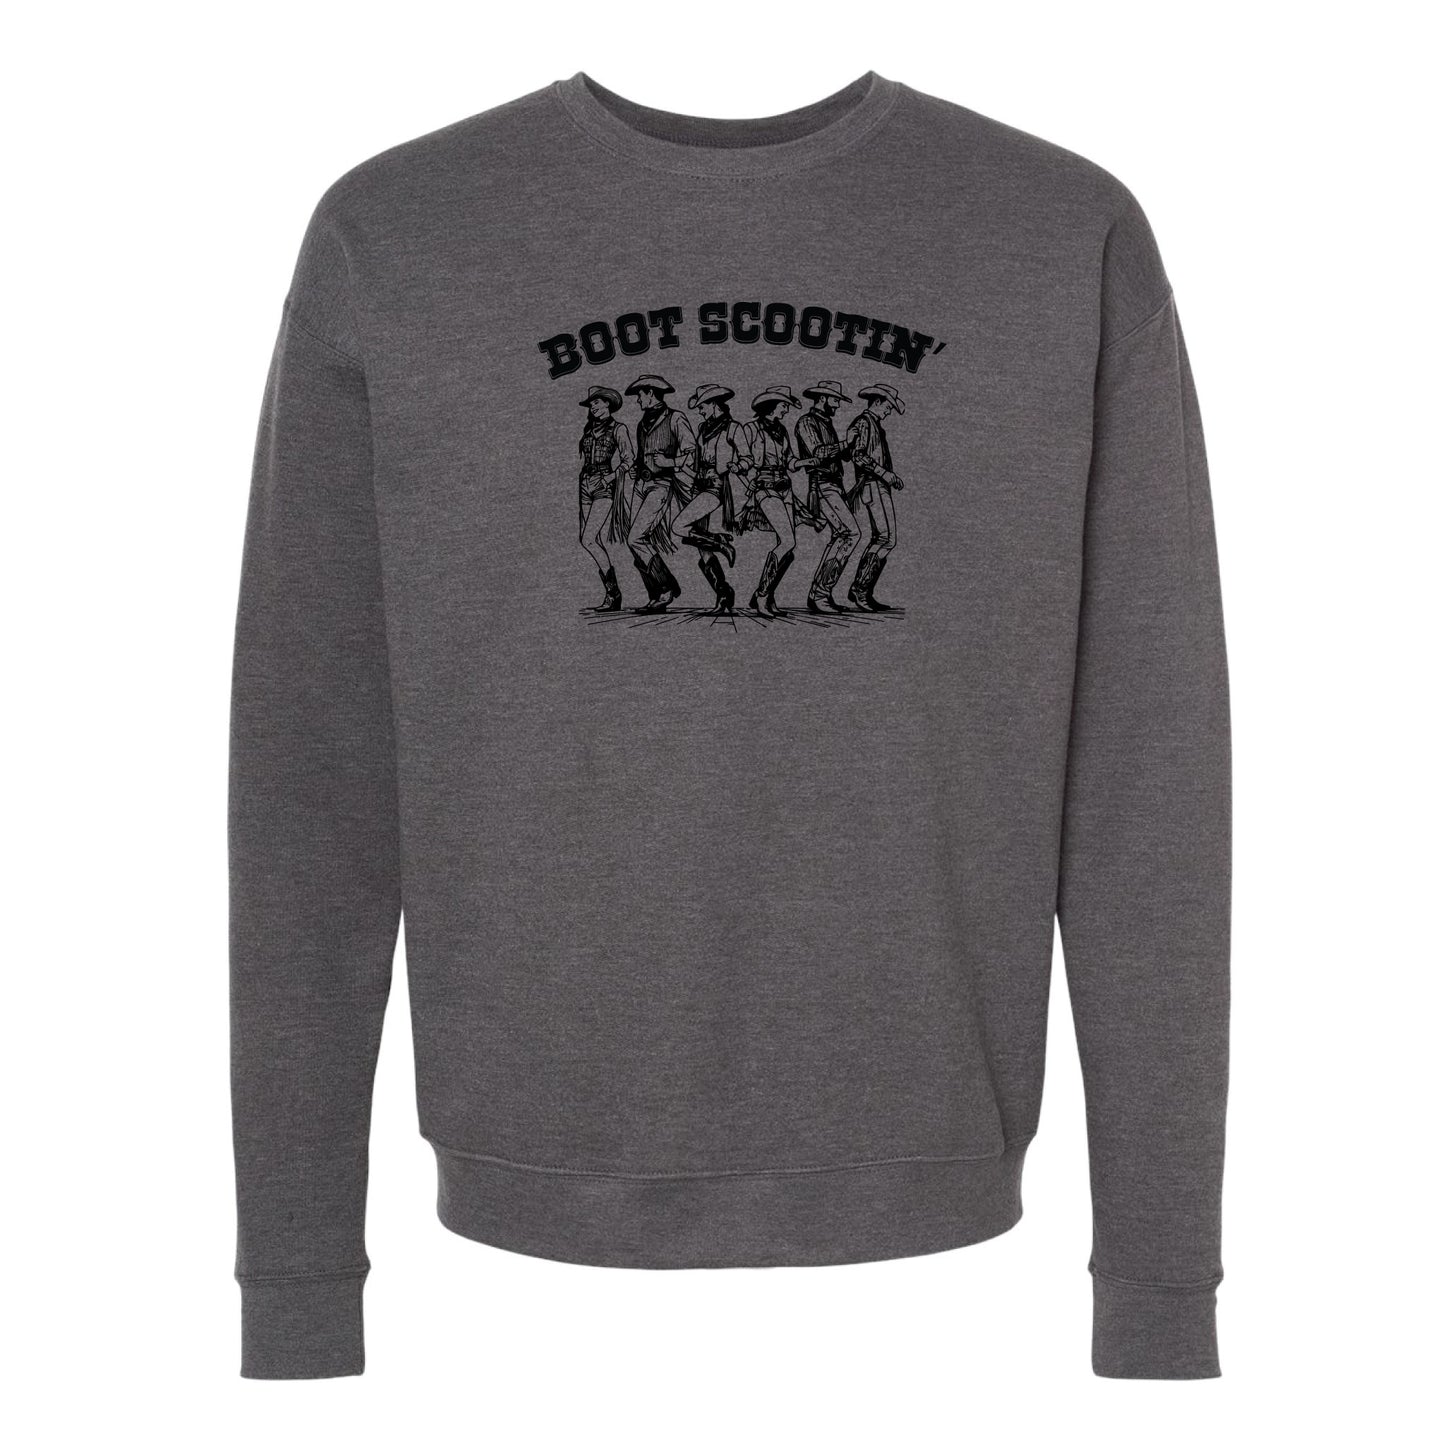 Boot Scootin' Boogie Crewneck Sweatshirt